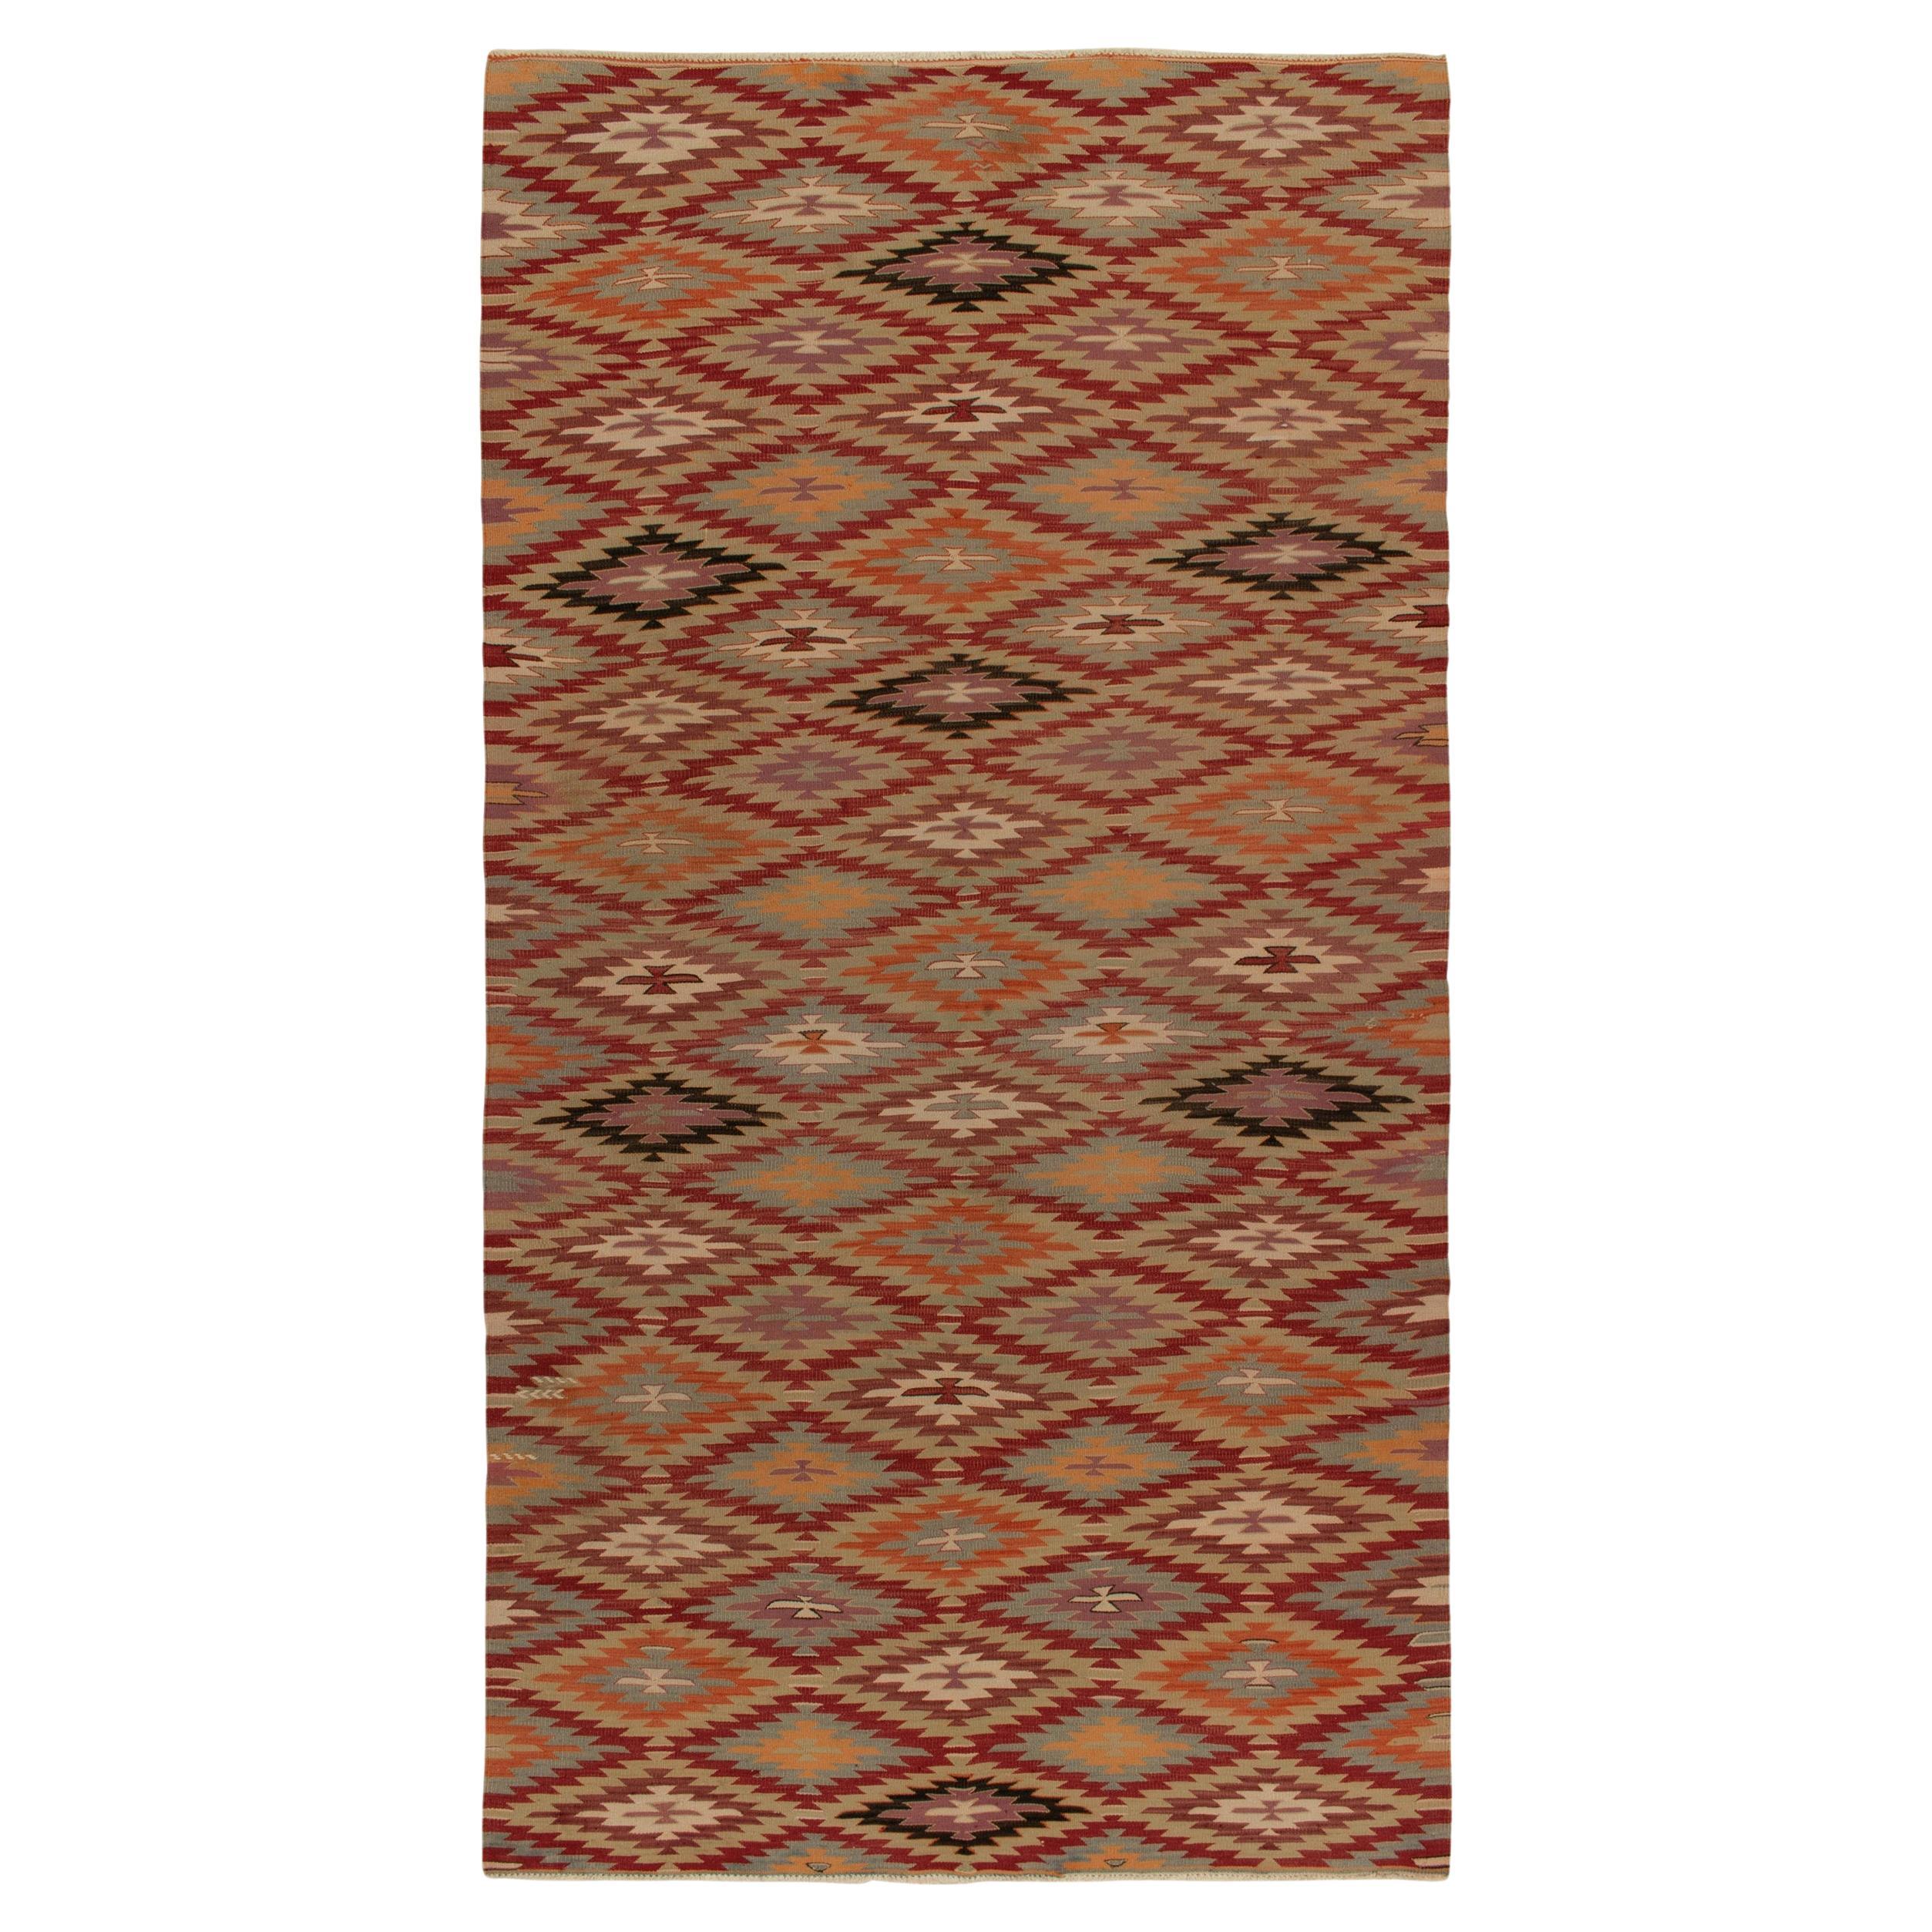 Vintage Tribal Kilim rug in Red, Orange and Blue Geometric patterns